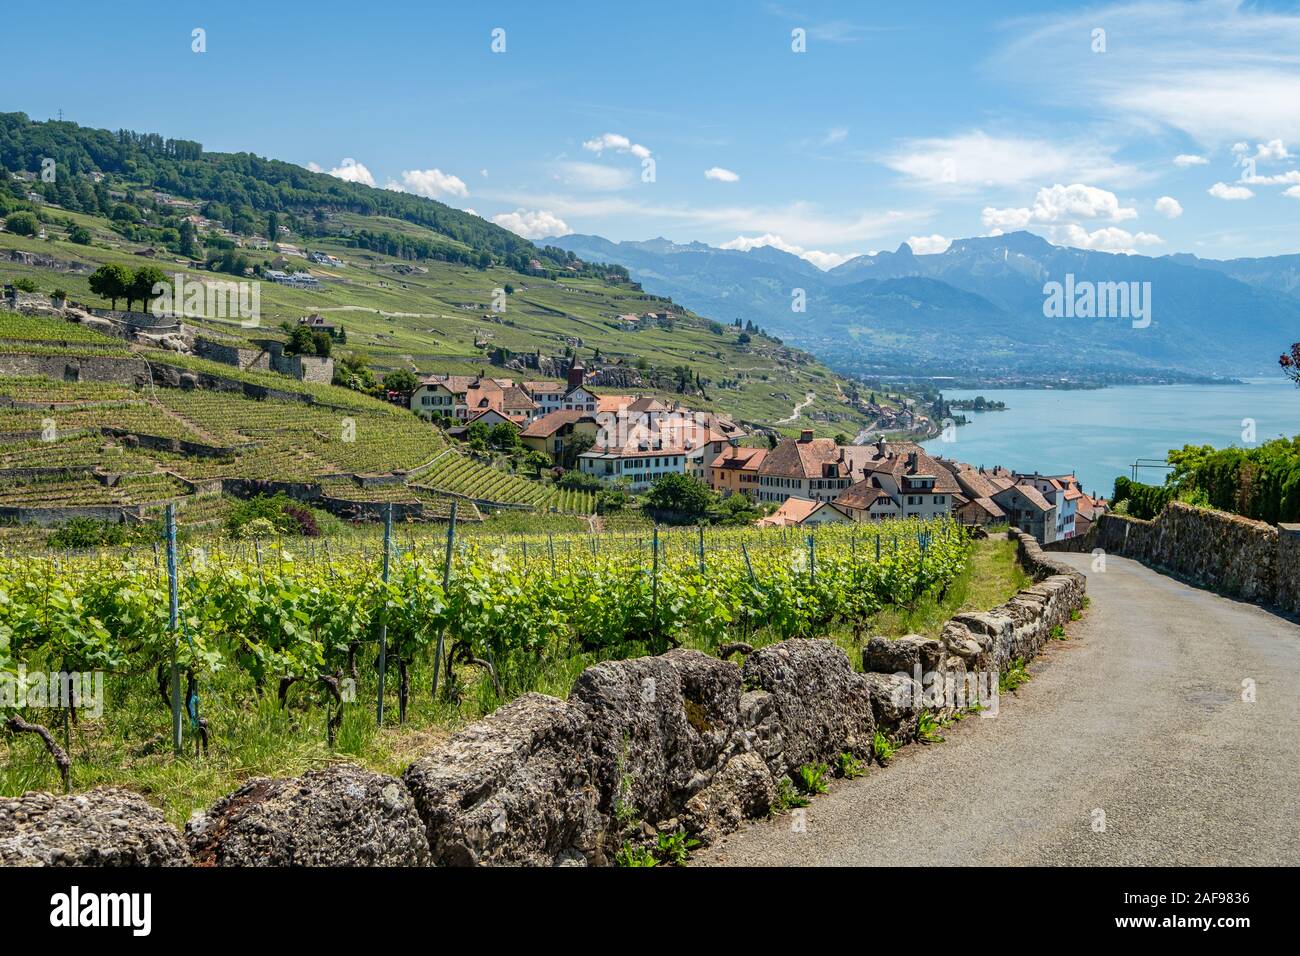 Blick auf einem kleinen Weingut Dorf namens Rivaz, im wunderschönen Lavaux Winery, einem UNESCO-geschützten Bereich, in der Schweiz Stockfoto